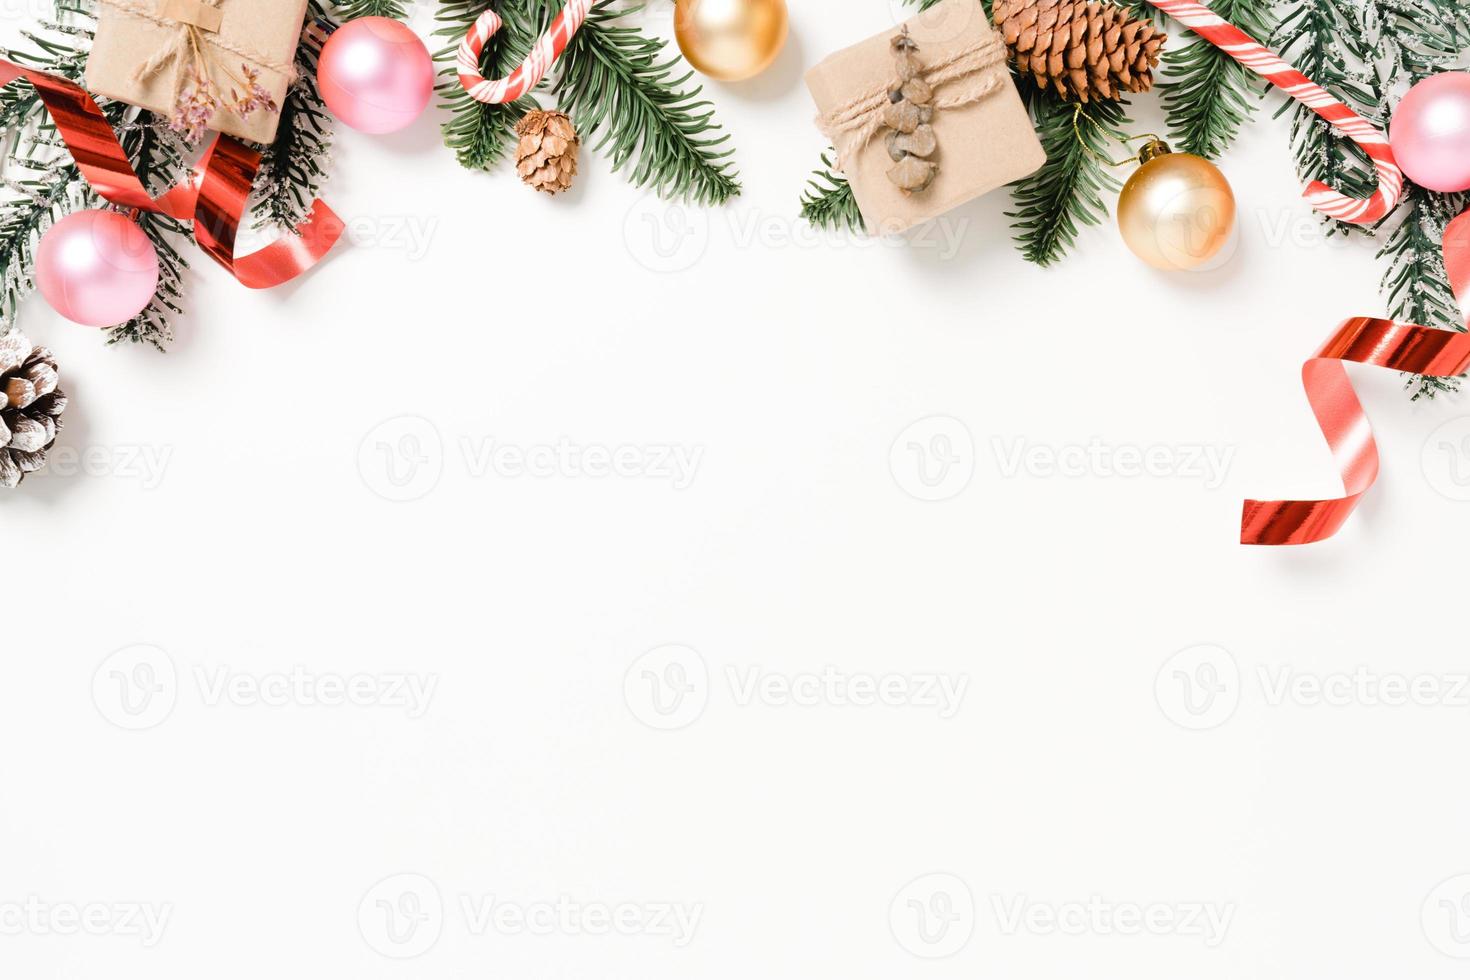 mise à plat créative minimale de la composition traditionnelle de noël et de la saison des vacances du nouvel an. vue de dessus des décorations de noël d'hiver sur fond blanc avec un espace vide pour le texte. copier la photographie de l'espace. photo